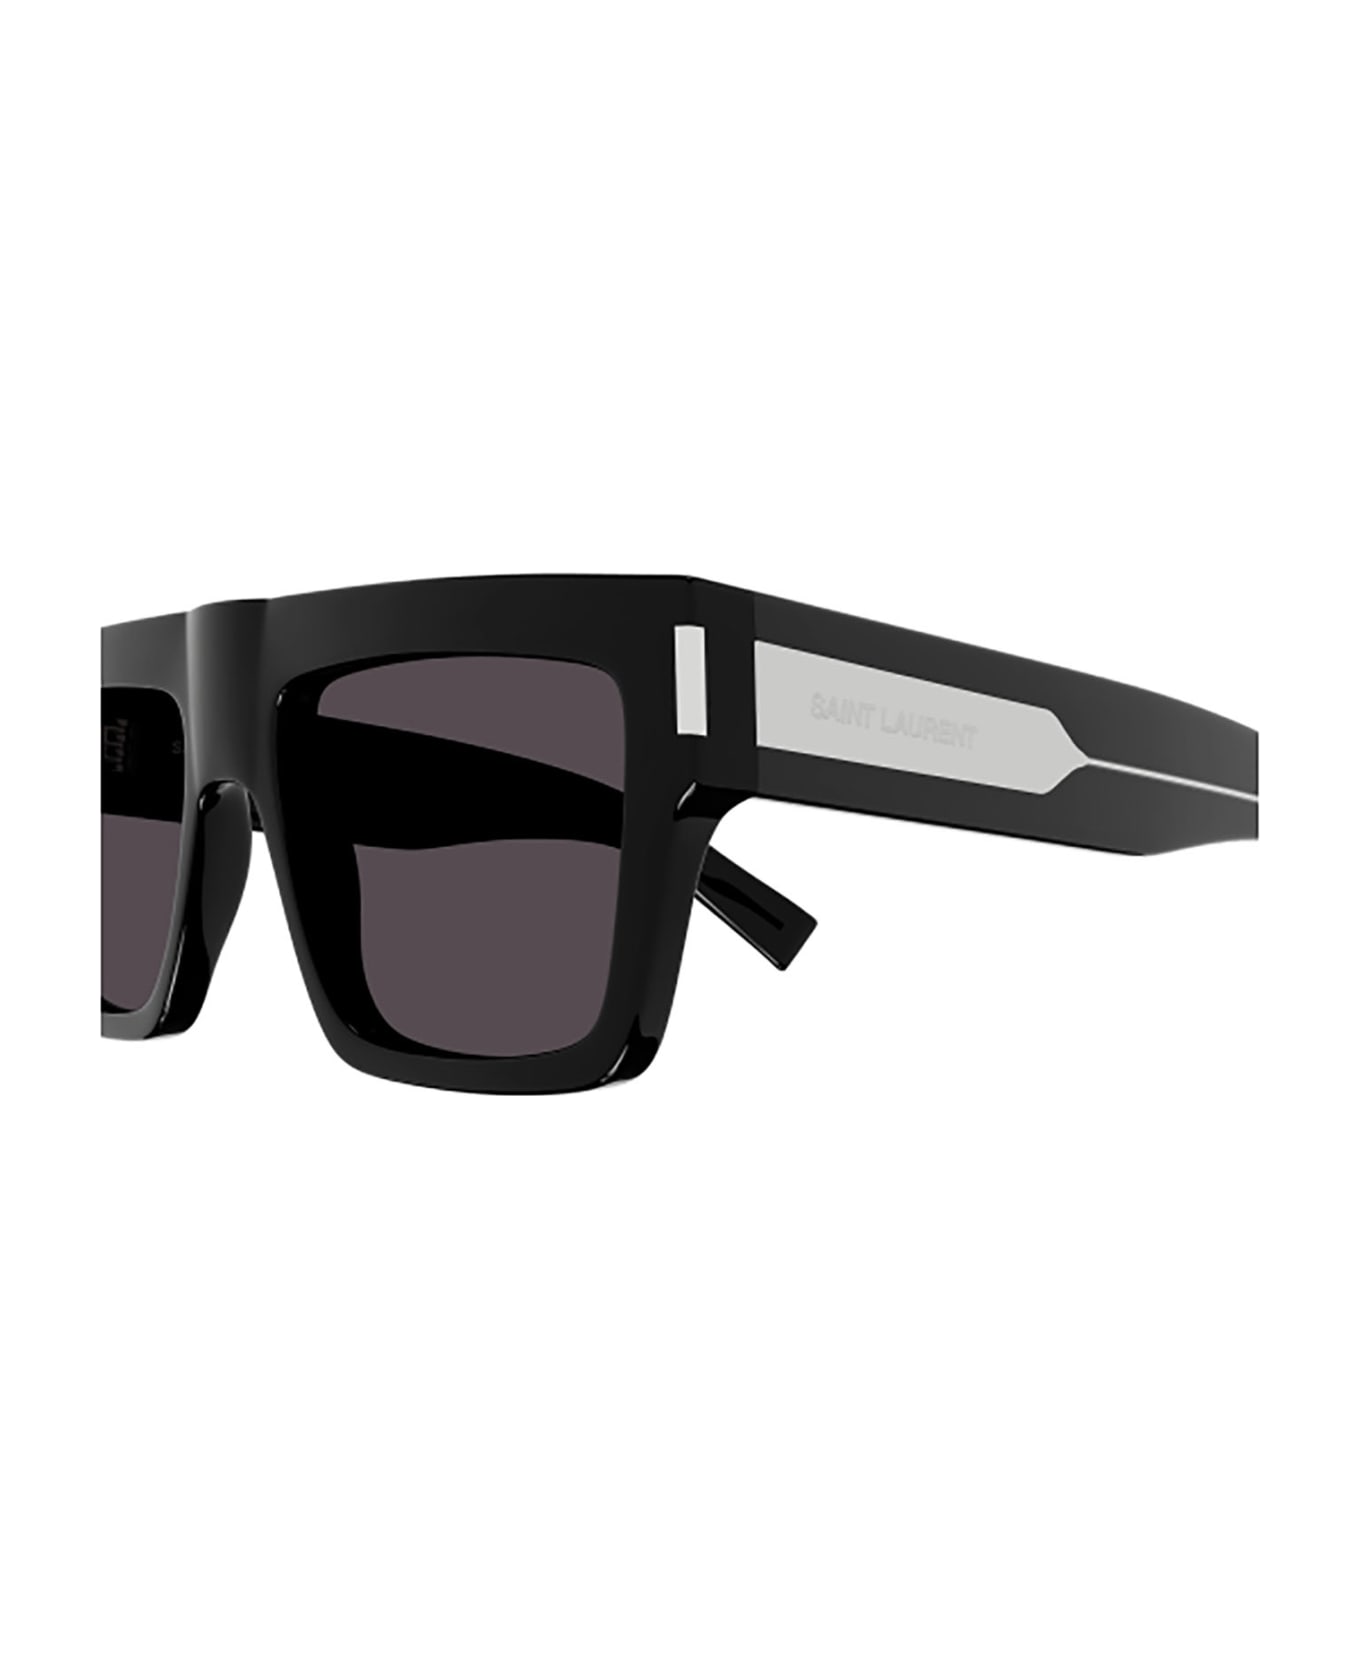 Saint Laurent Eyewear SL 628 Sunglasses - Black Crystal Black